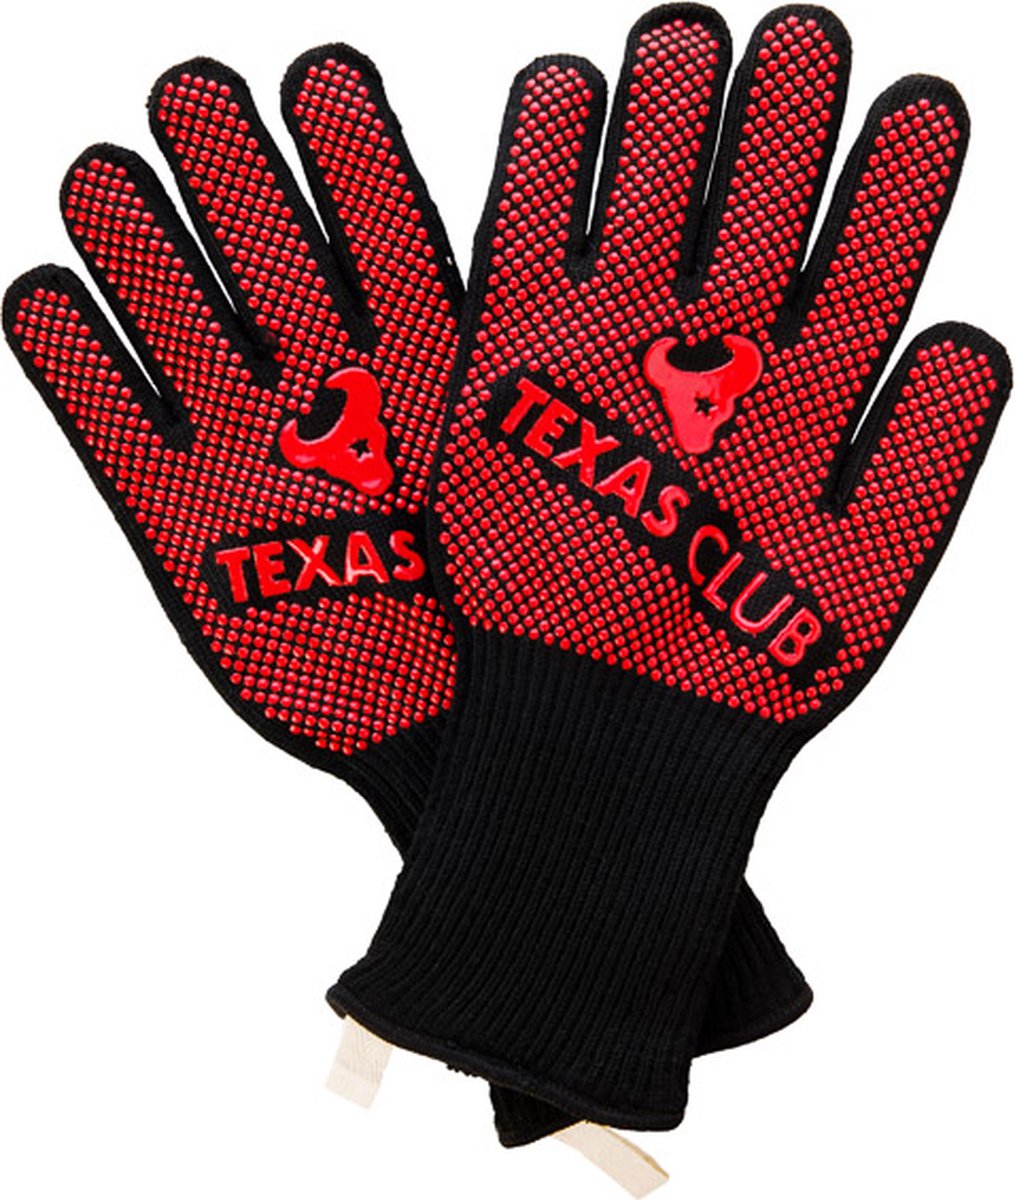 Texas Club - Hittebestendige handschoenen